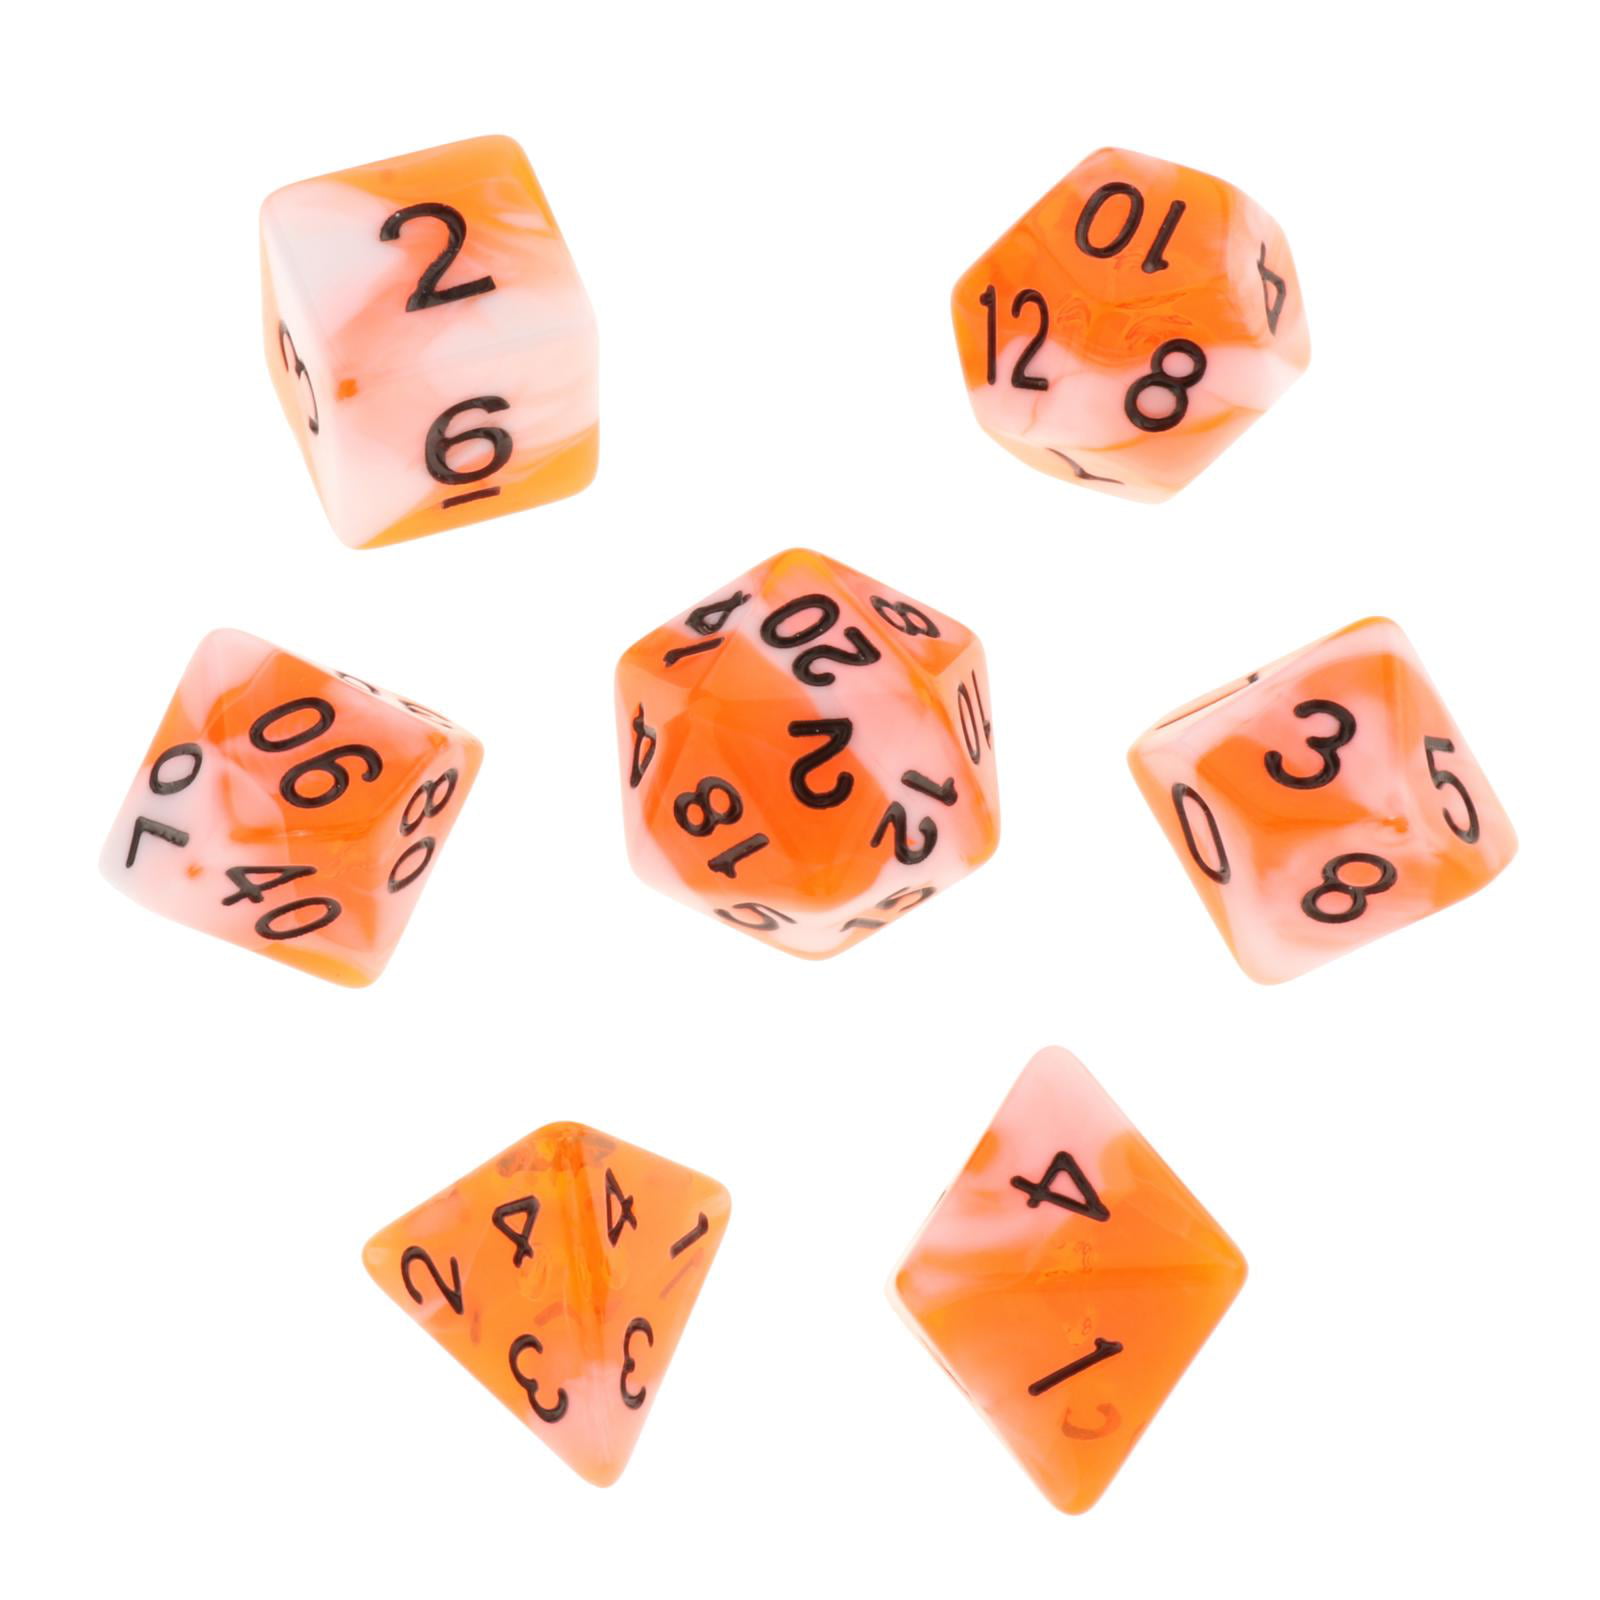 4 Sided D&D DnD RPG 5 D4 Orange Translucent Color Polyhedral Dice Set Lot 